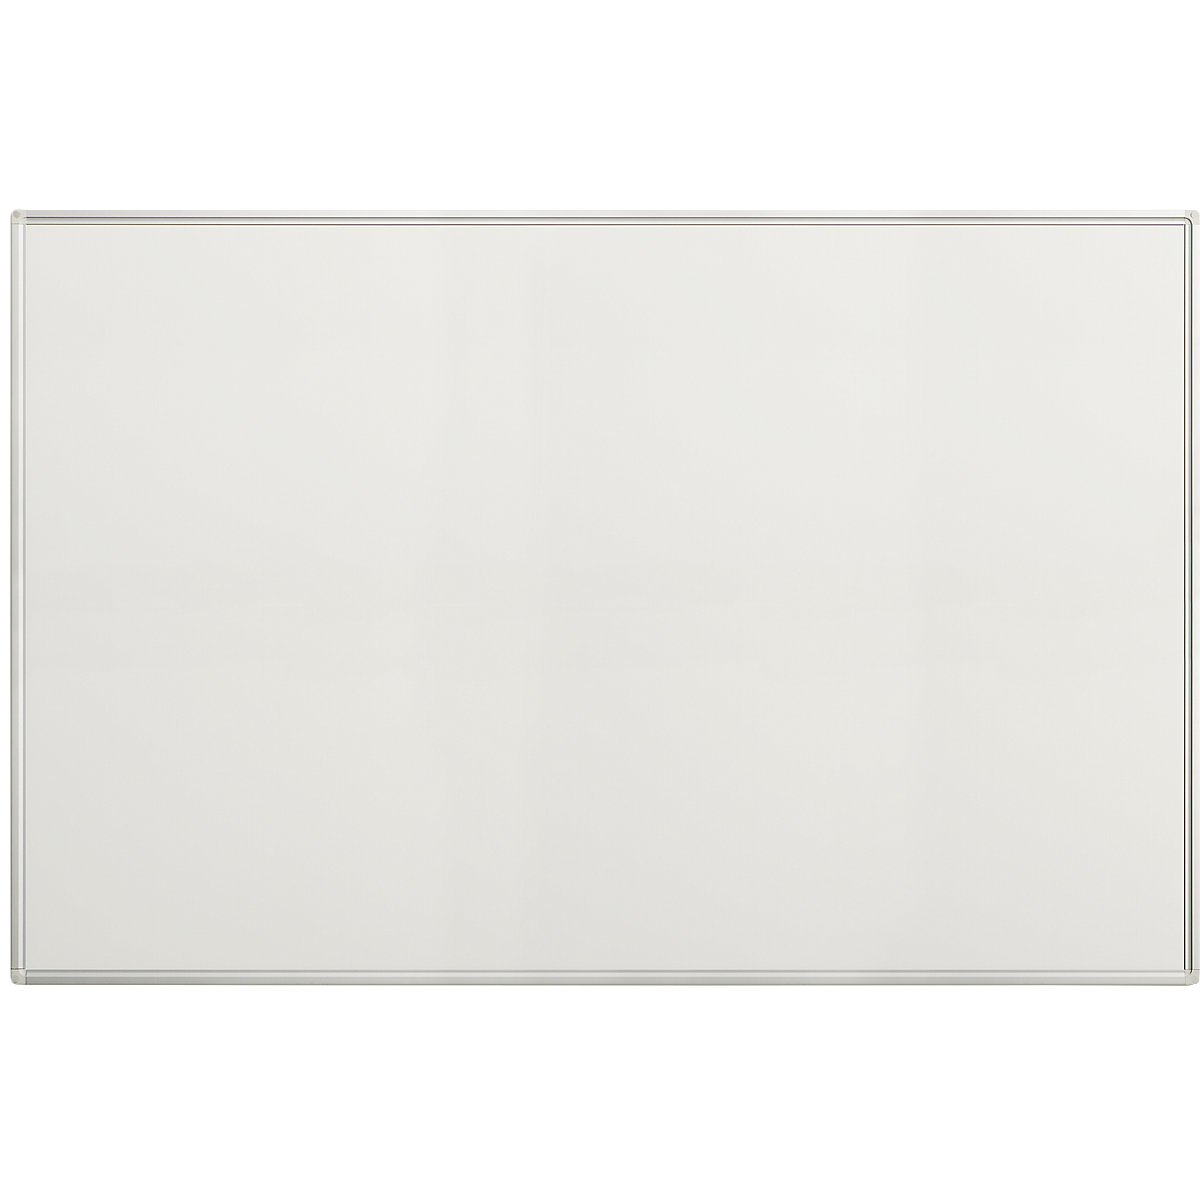 Biela tabuľa Economy – eurokraft pro, oceľový plech, lakovaný, š x v 1500 x 1000 mm-12